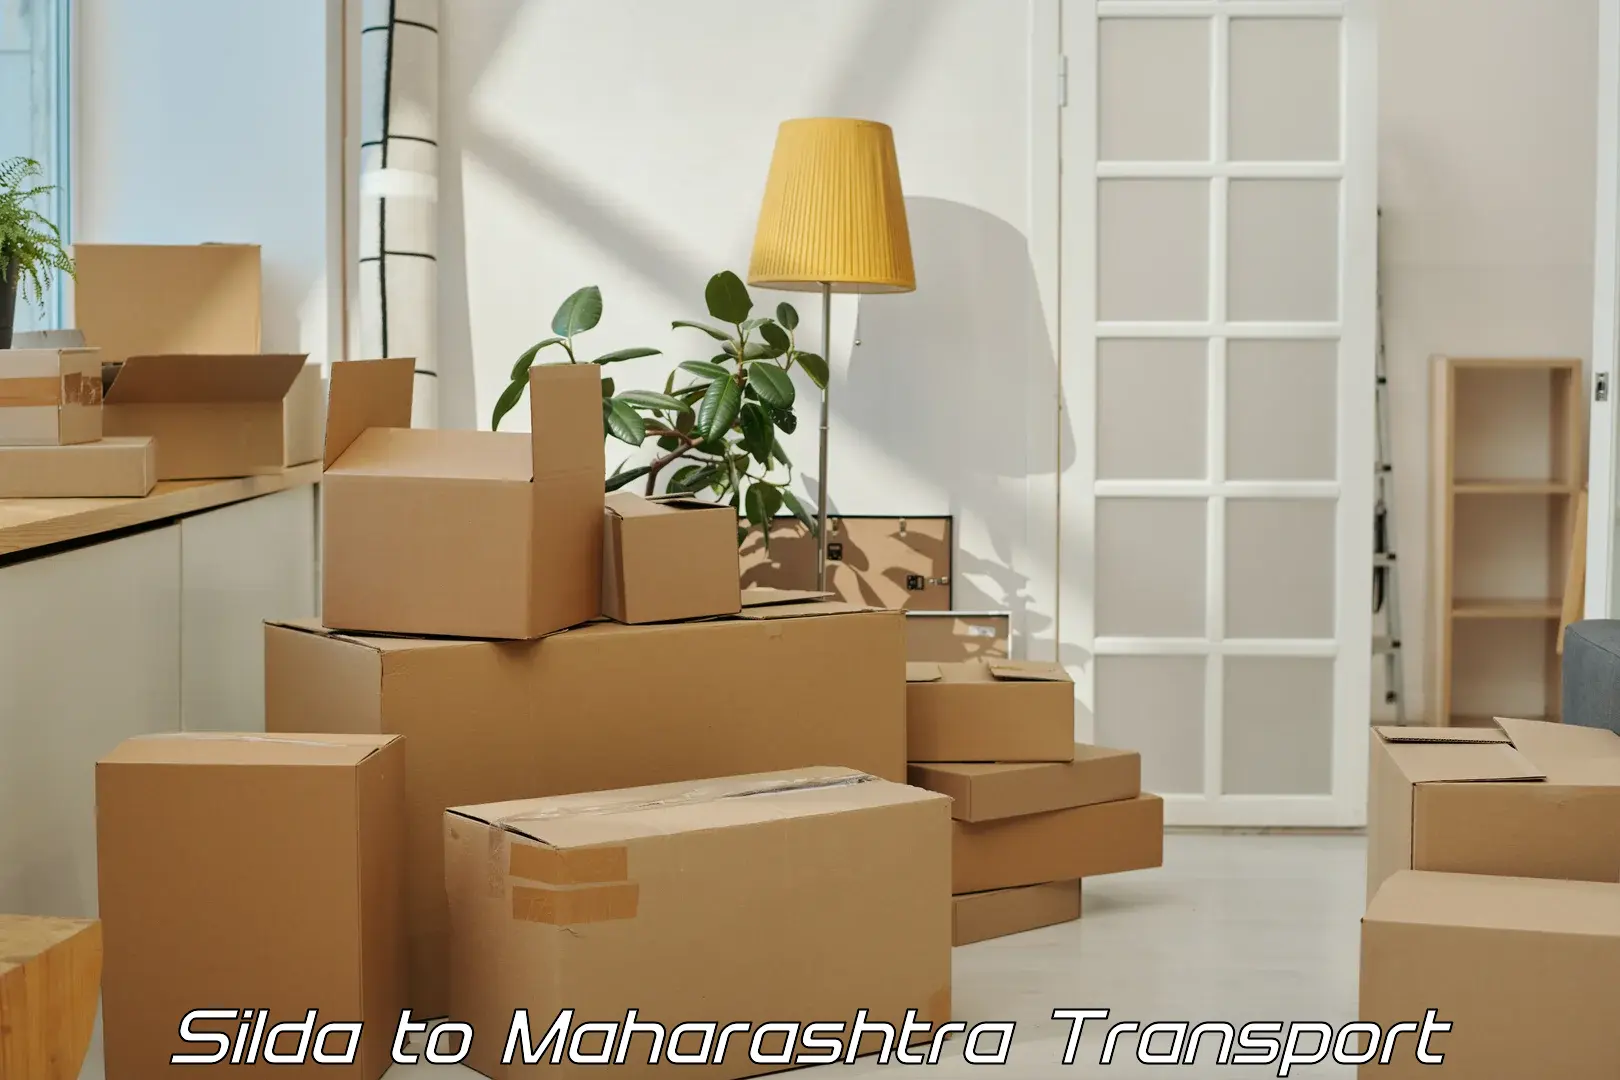 Goods delivery service Silda to Gadchandur